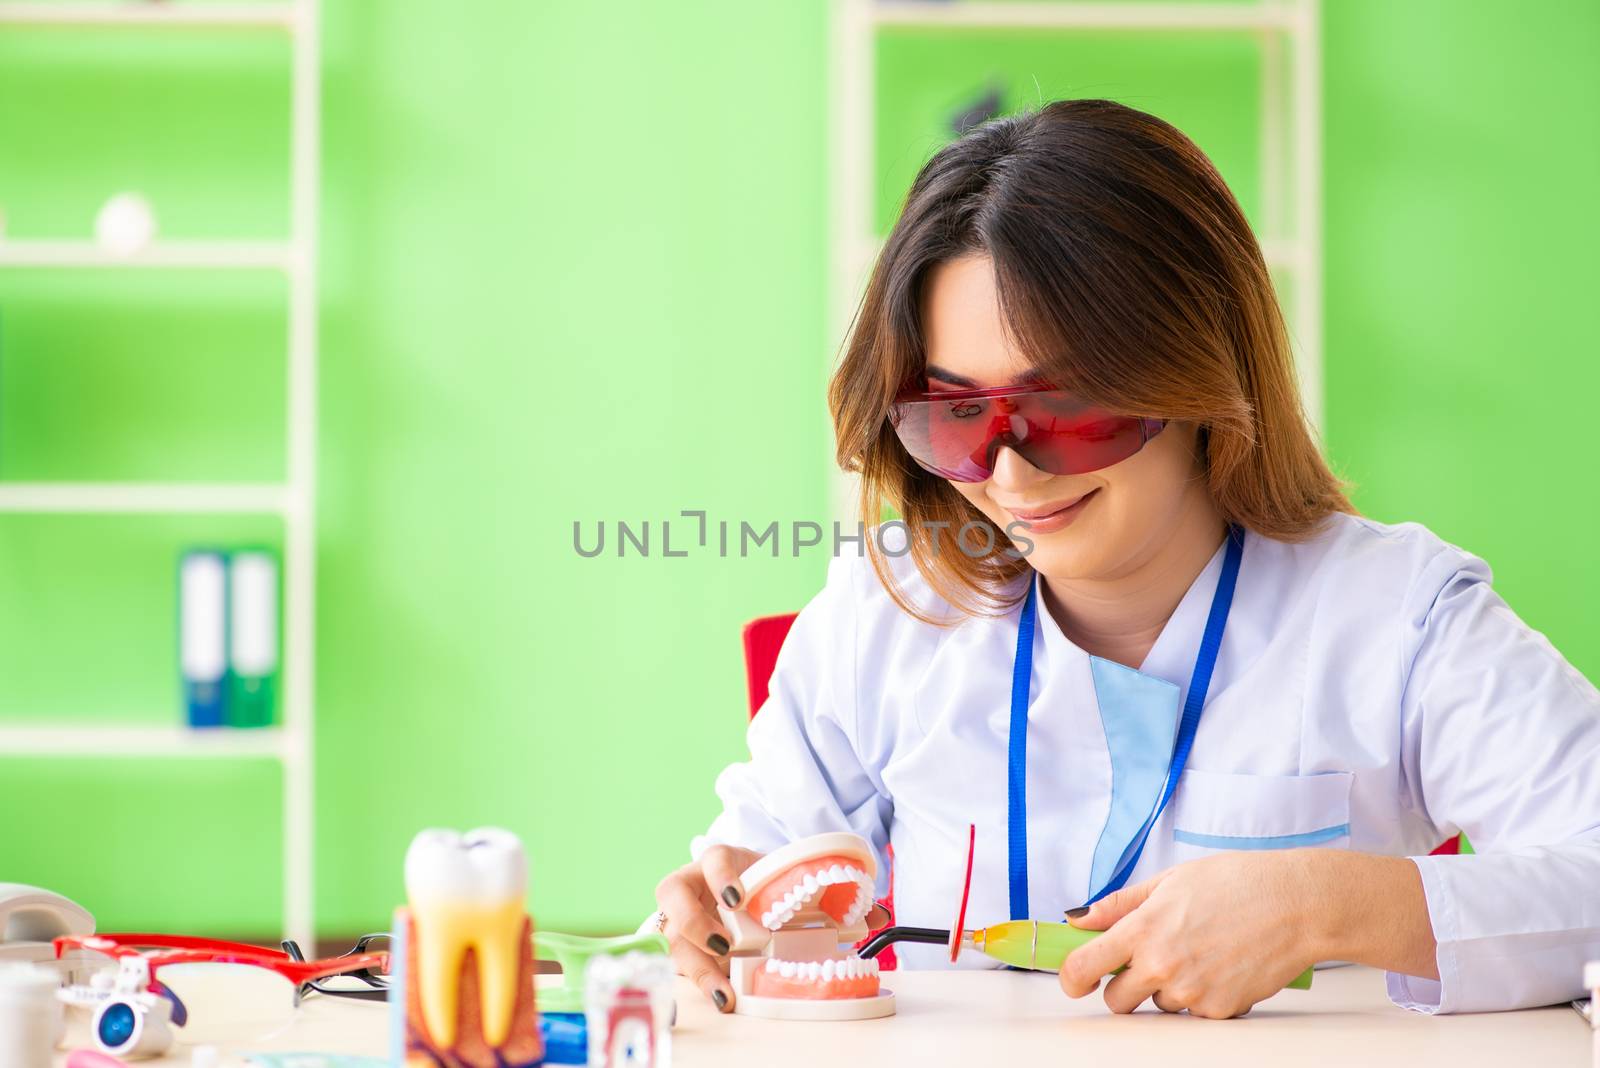 Woman dentist working on teeth implant by Elnur